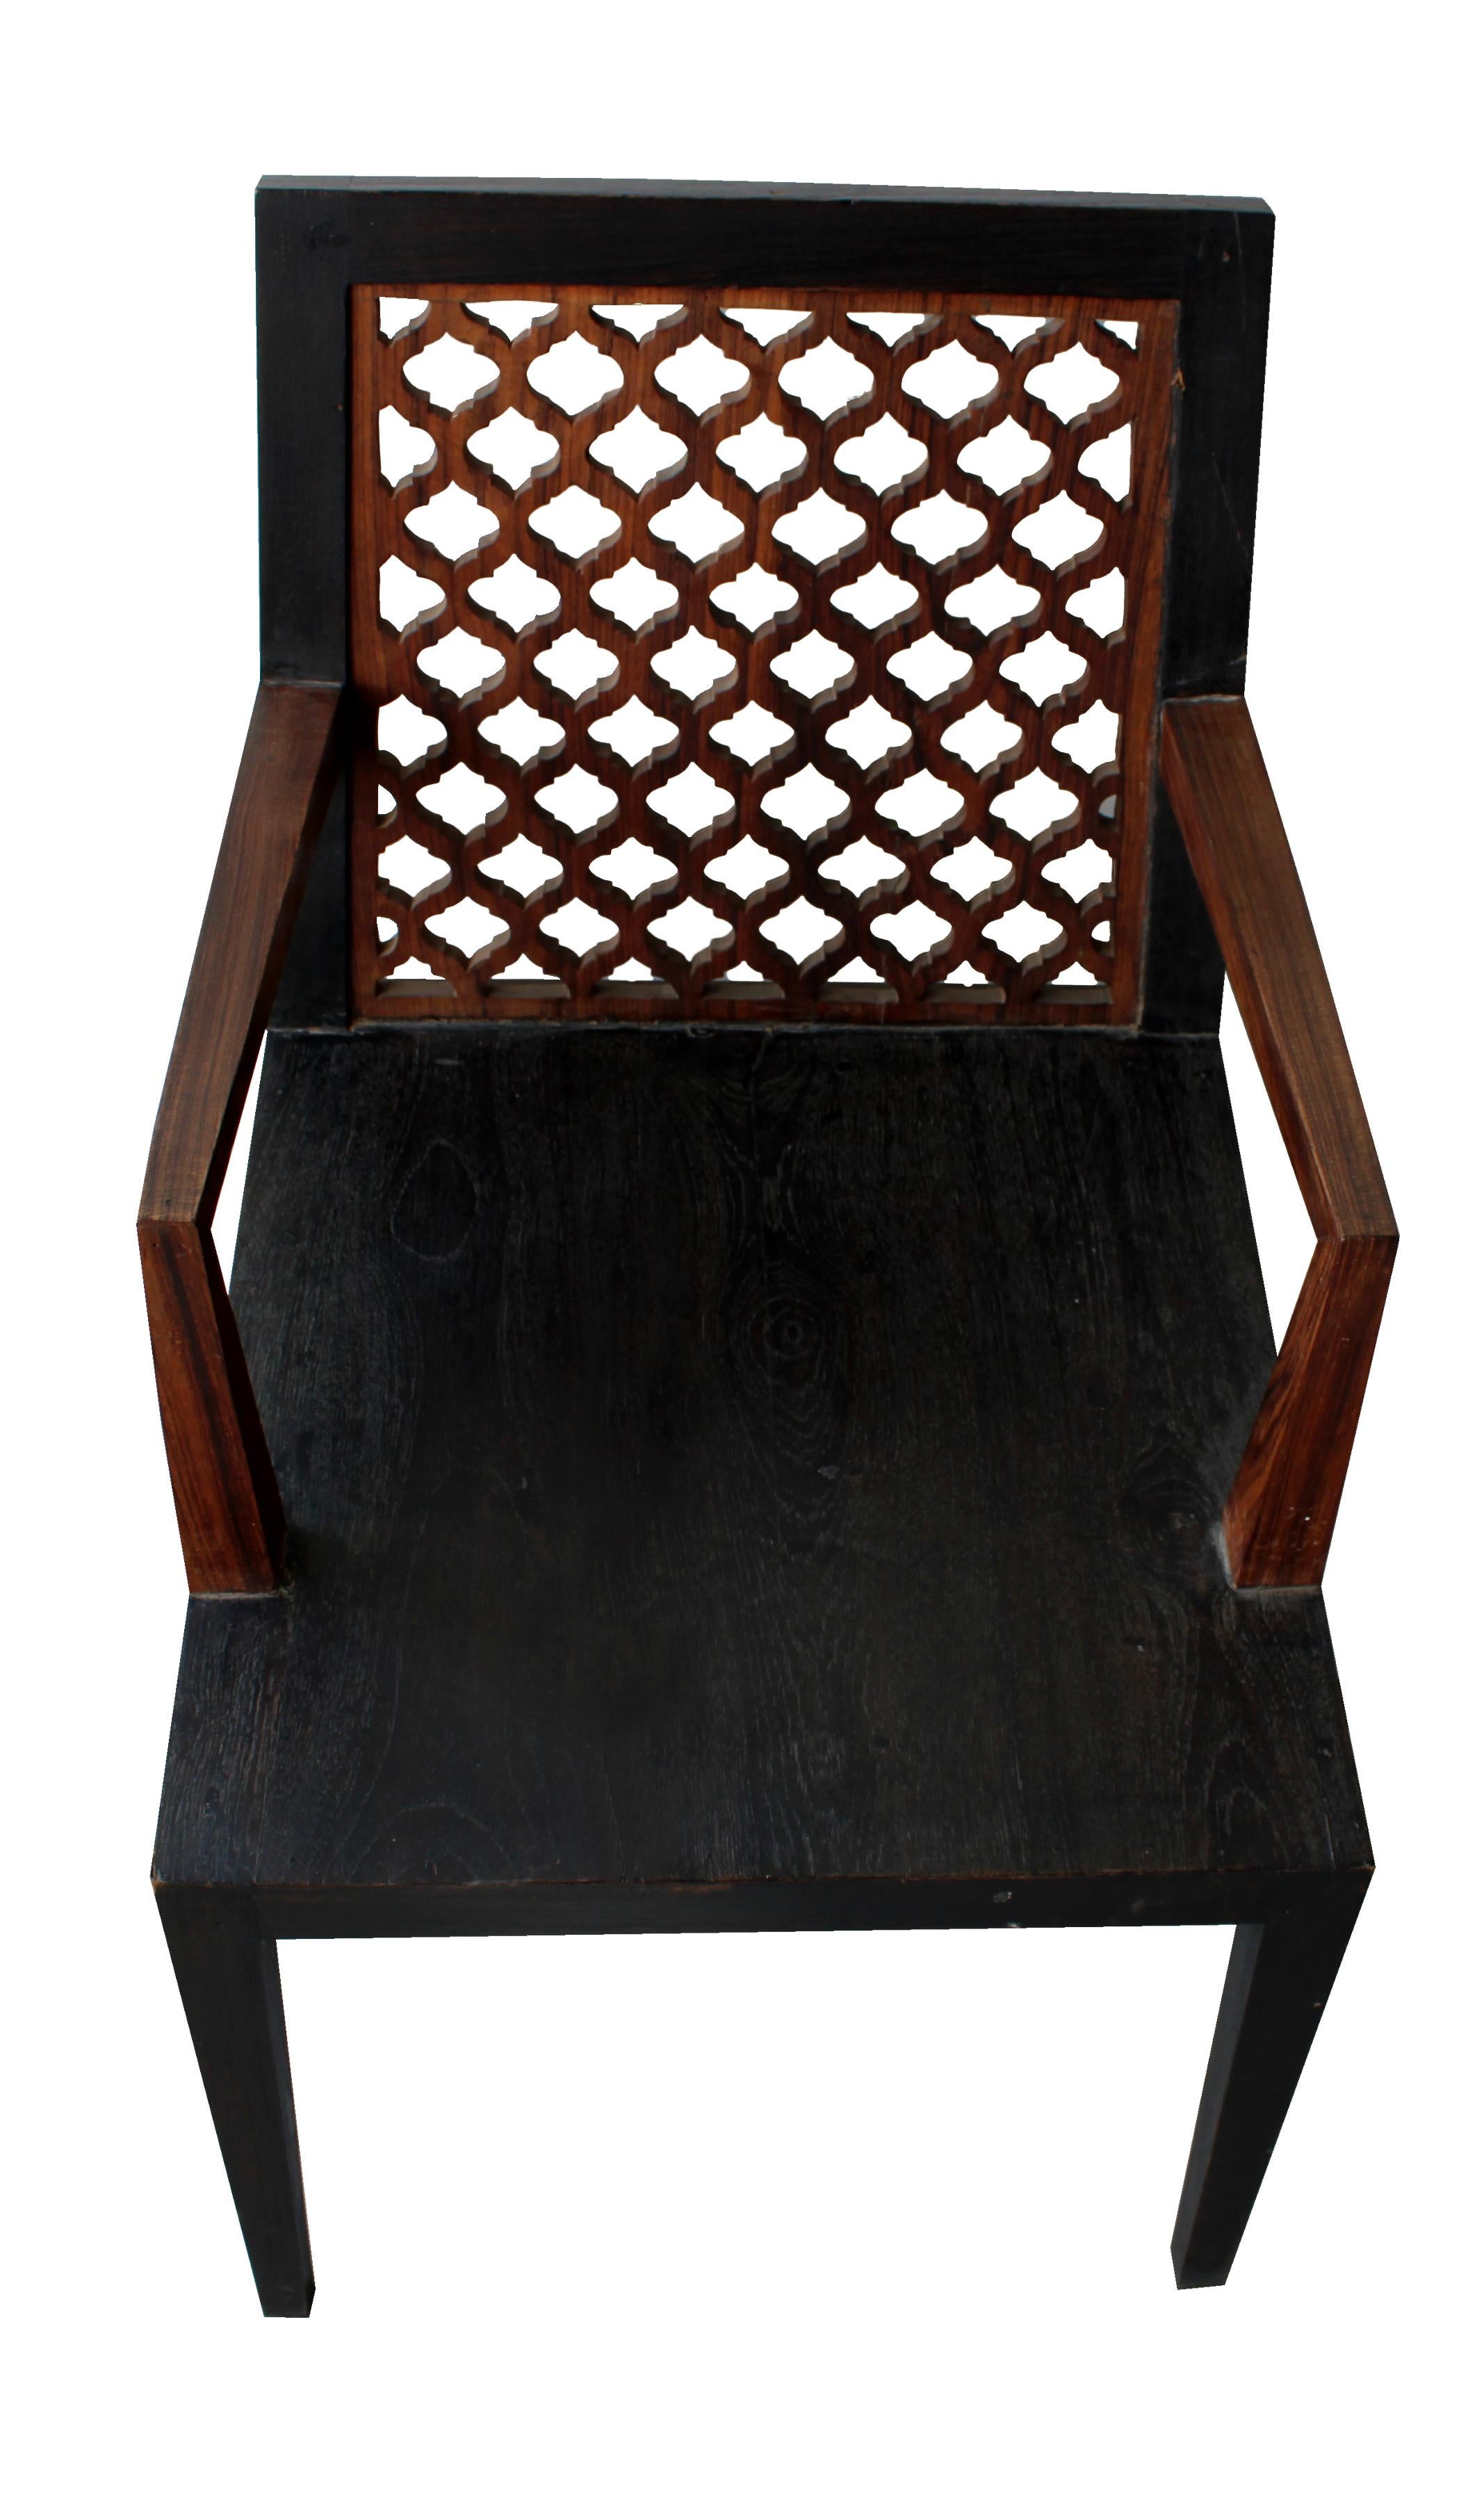 Inspiriert von dem eleganten durchbrochenen Jali-Muster in der Architektur, die er in und um Rajasthan beobachtete, entwarf der renommierte Designer Paul Mathieu diese elegante Char. Dieser elegante Stuhl wird aus massiven Teakholzstücken